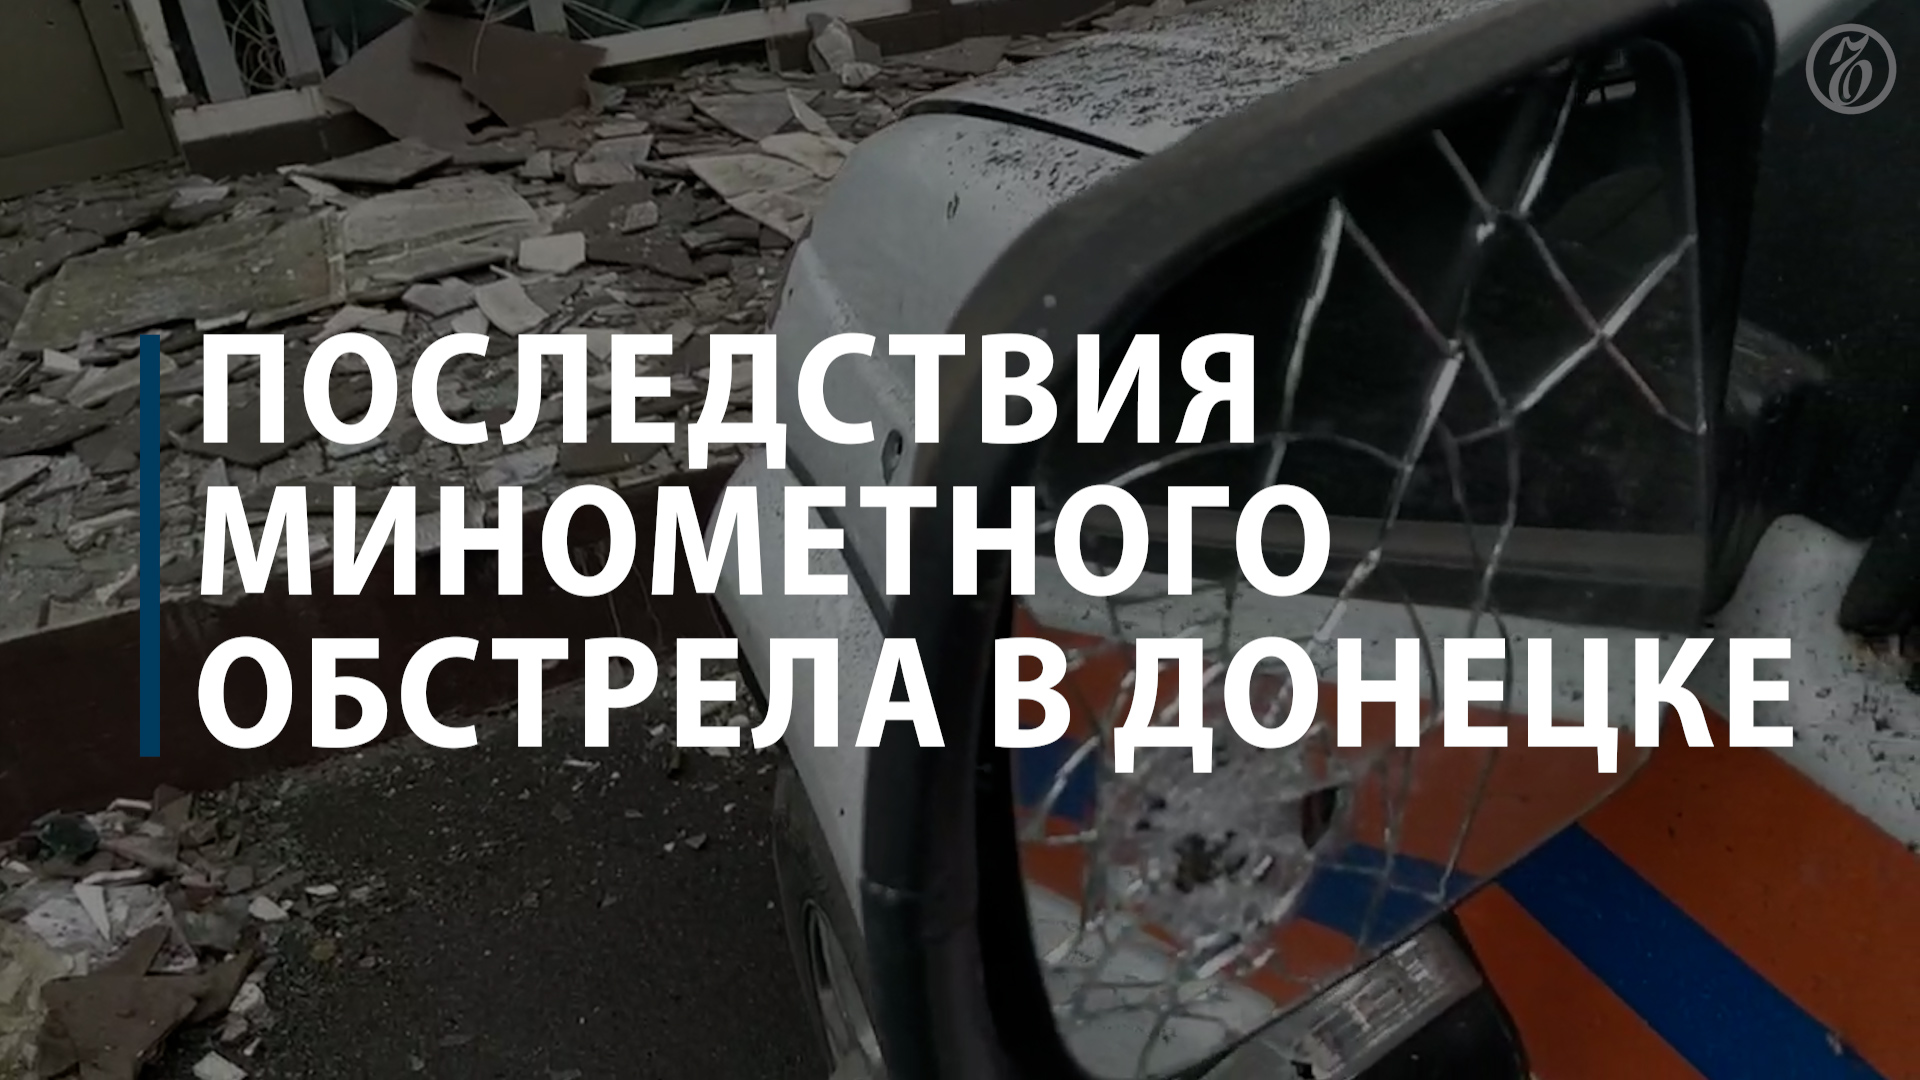 Последствия минометного обстрела в Донецке